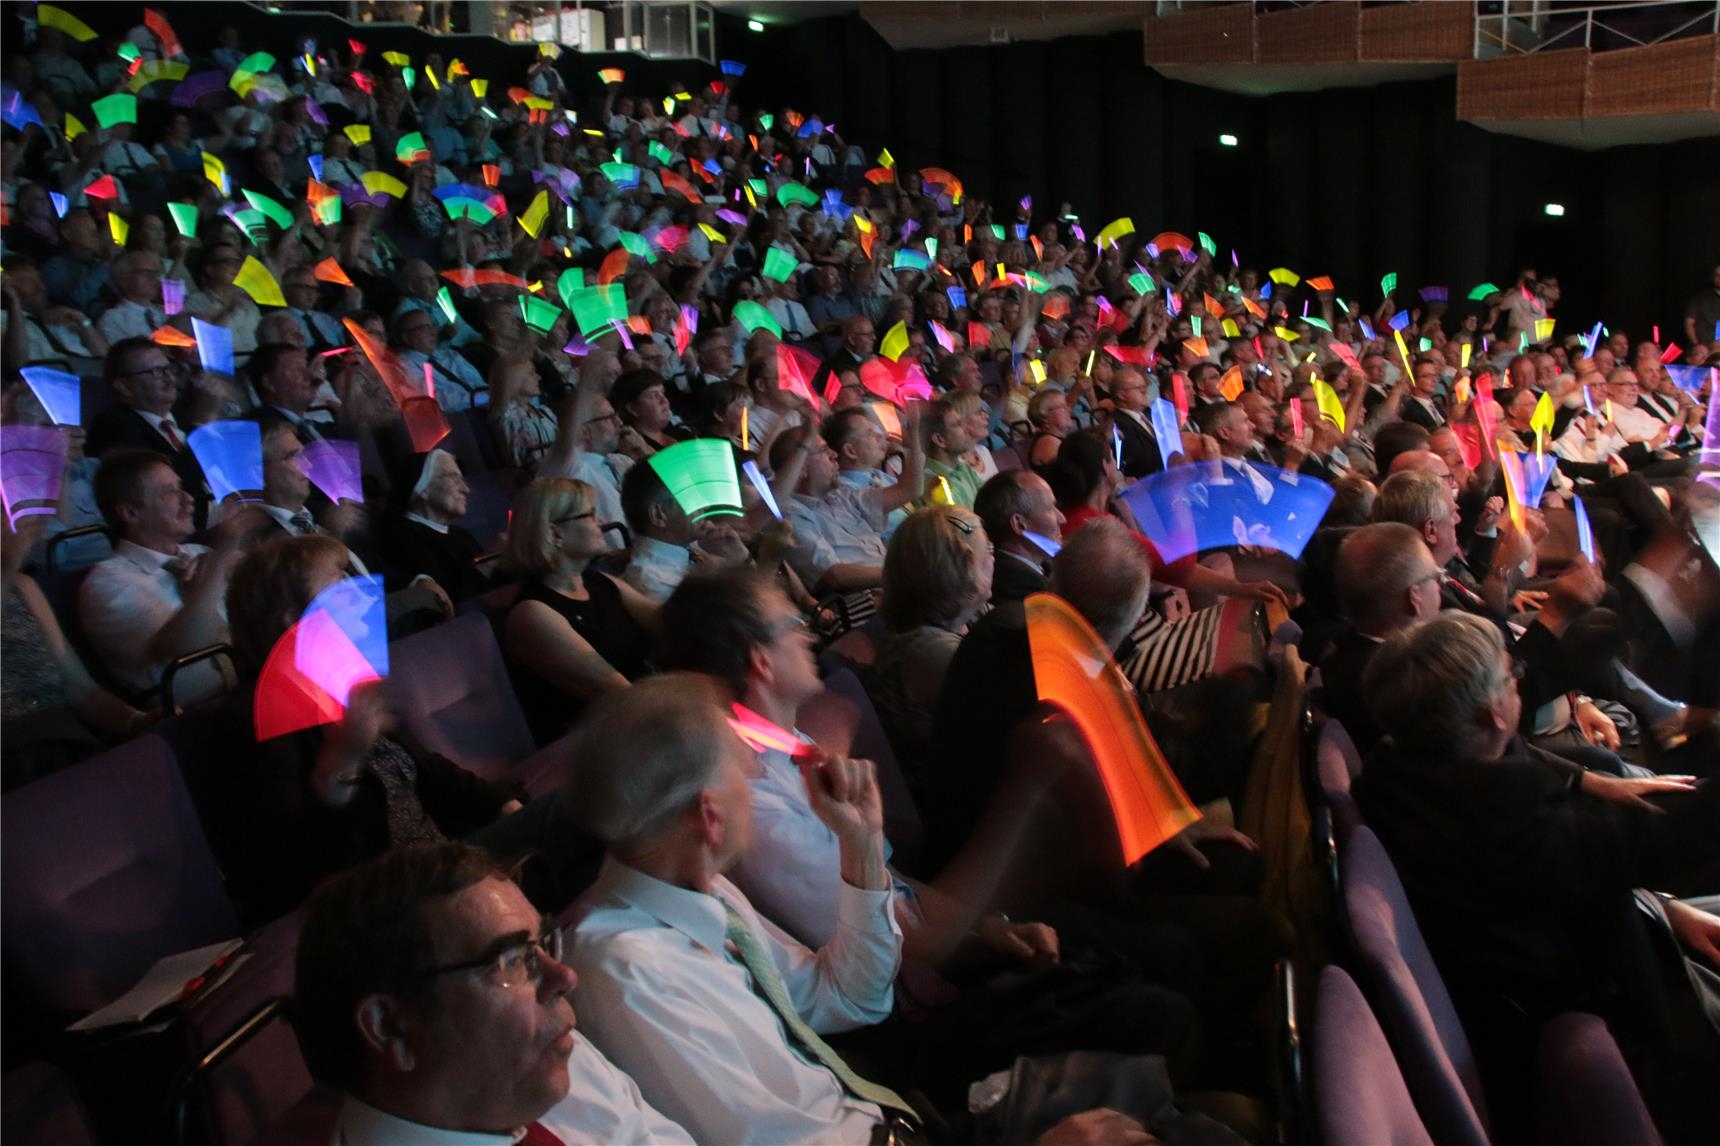 Das Foto zeigt einen vollbesetzten Theatersaal, in dem die Zuschauer Leuchtstäbe schwingen. (Harald Westbeld)